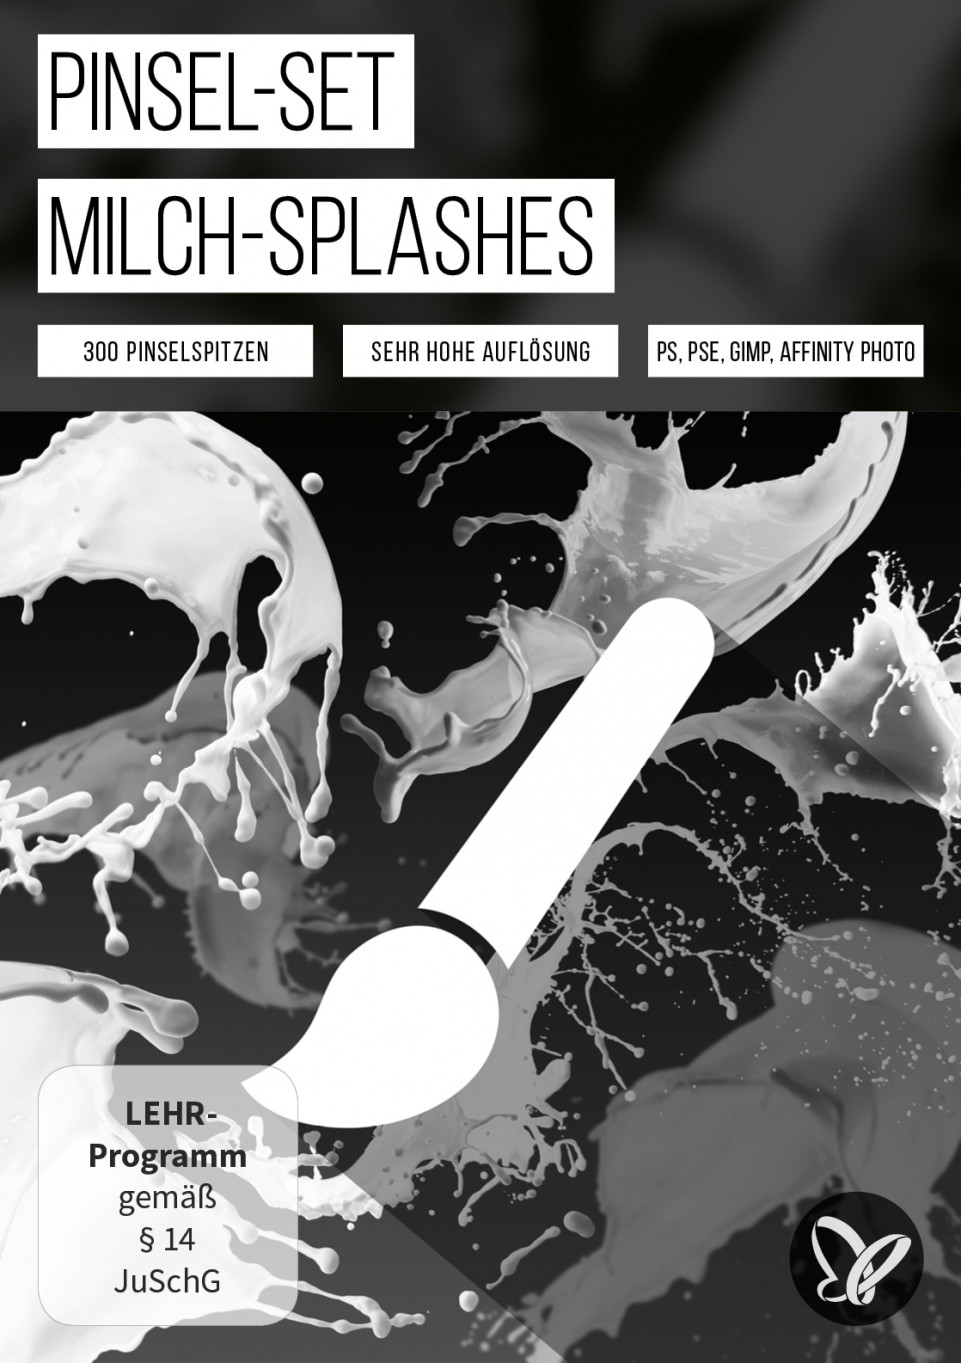 Splash-Brushes für Photoshop, Elements & GIMP: hochaufgelöste Milch-Pinsel